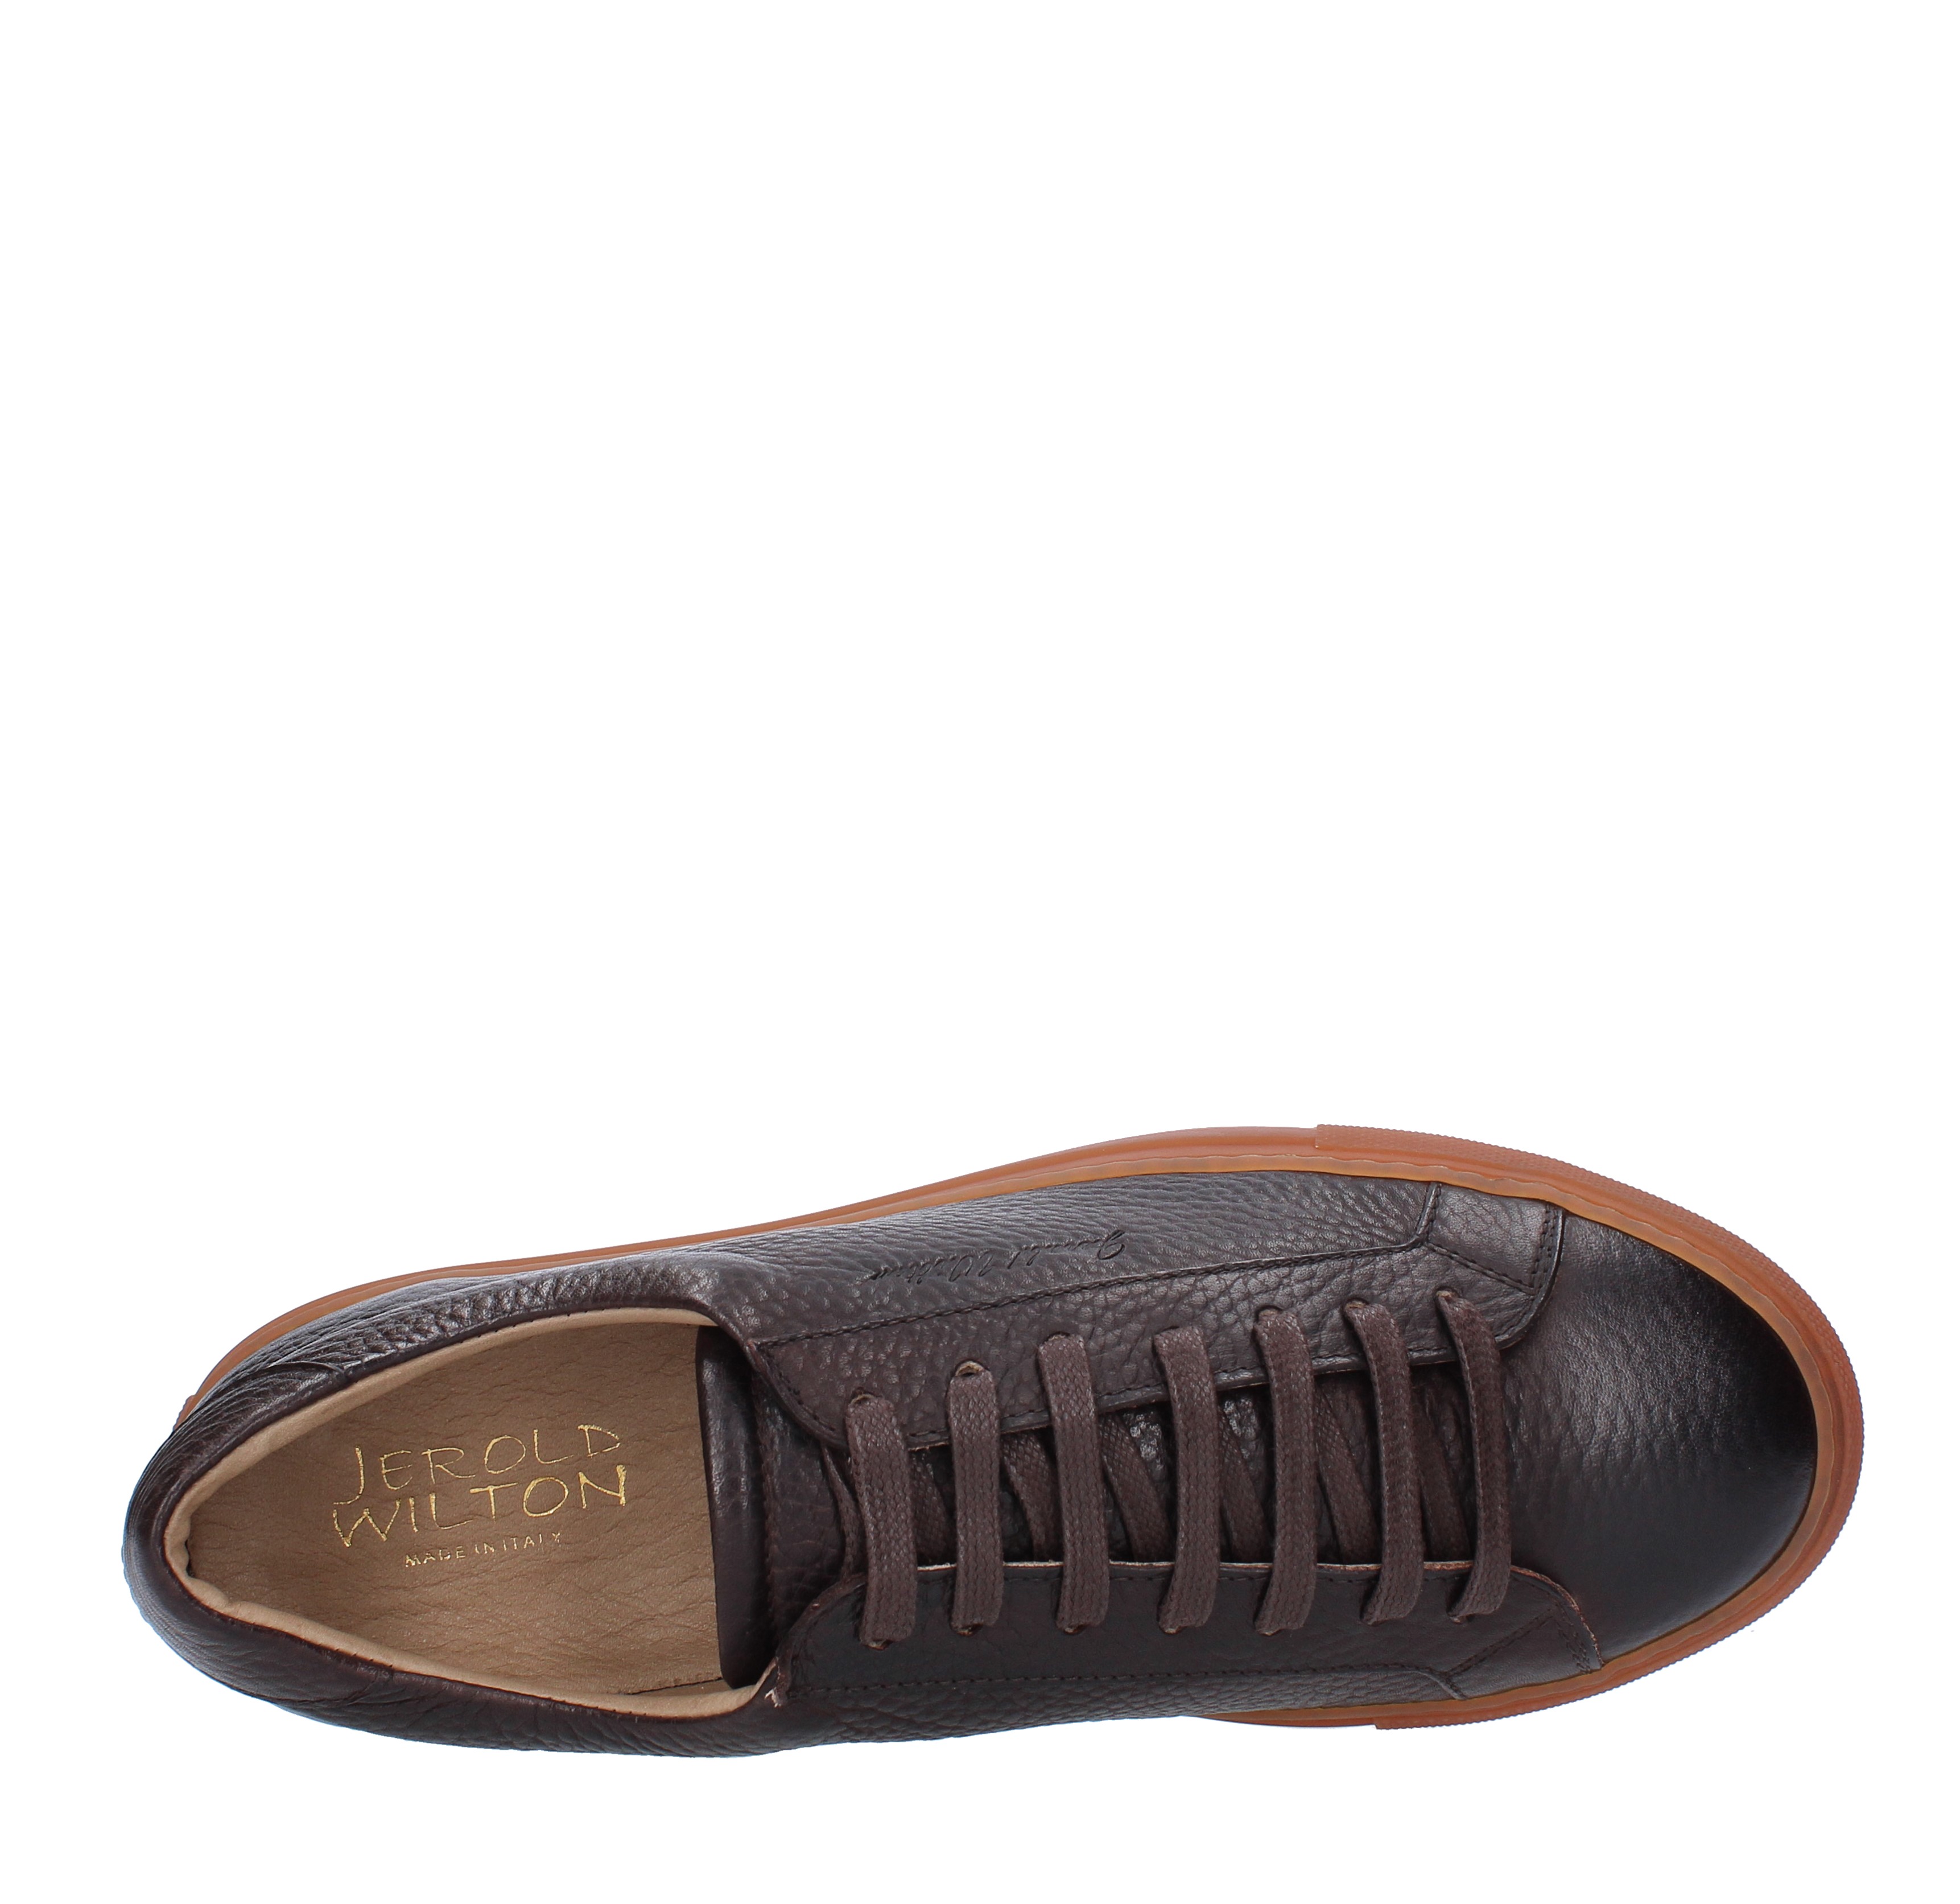 Sneakers in pelle JEROLD WILTON | 1012-93MARRONE T.MORO